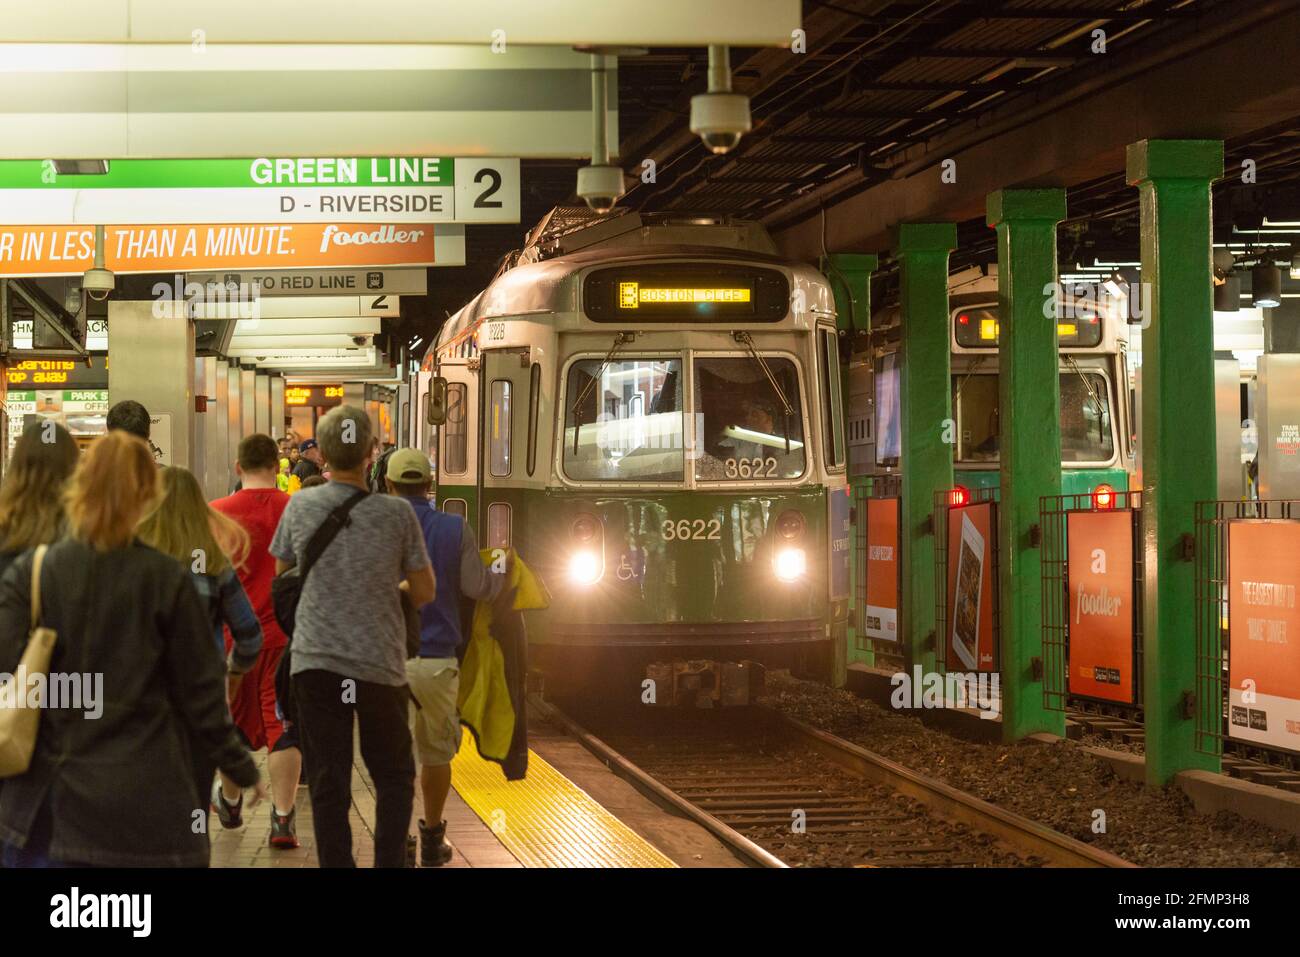 Passagers à bord d'une voiture Green Line (tramway, train) en direction de Boston College à Park Street sur le métro MBTA Banque D'Images